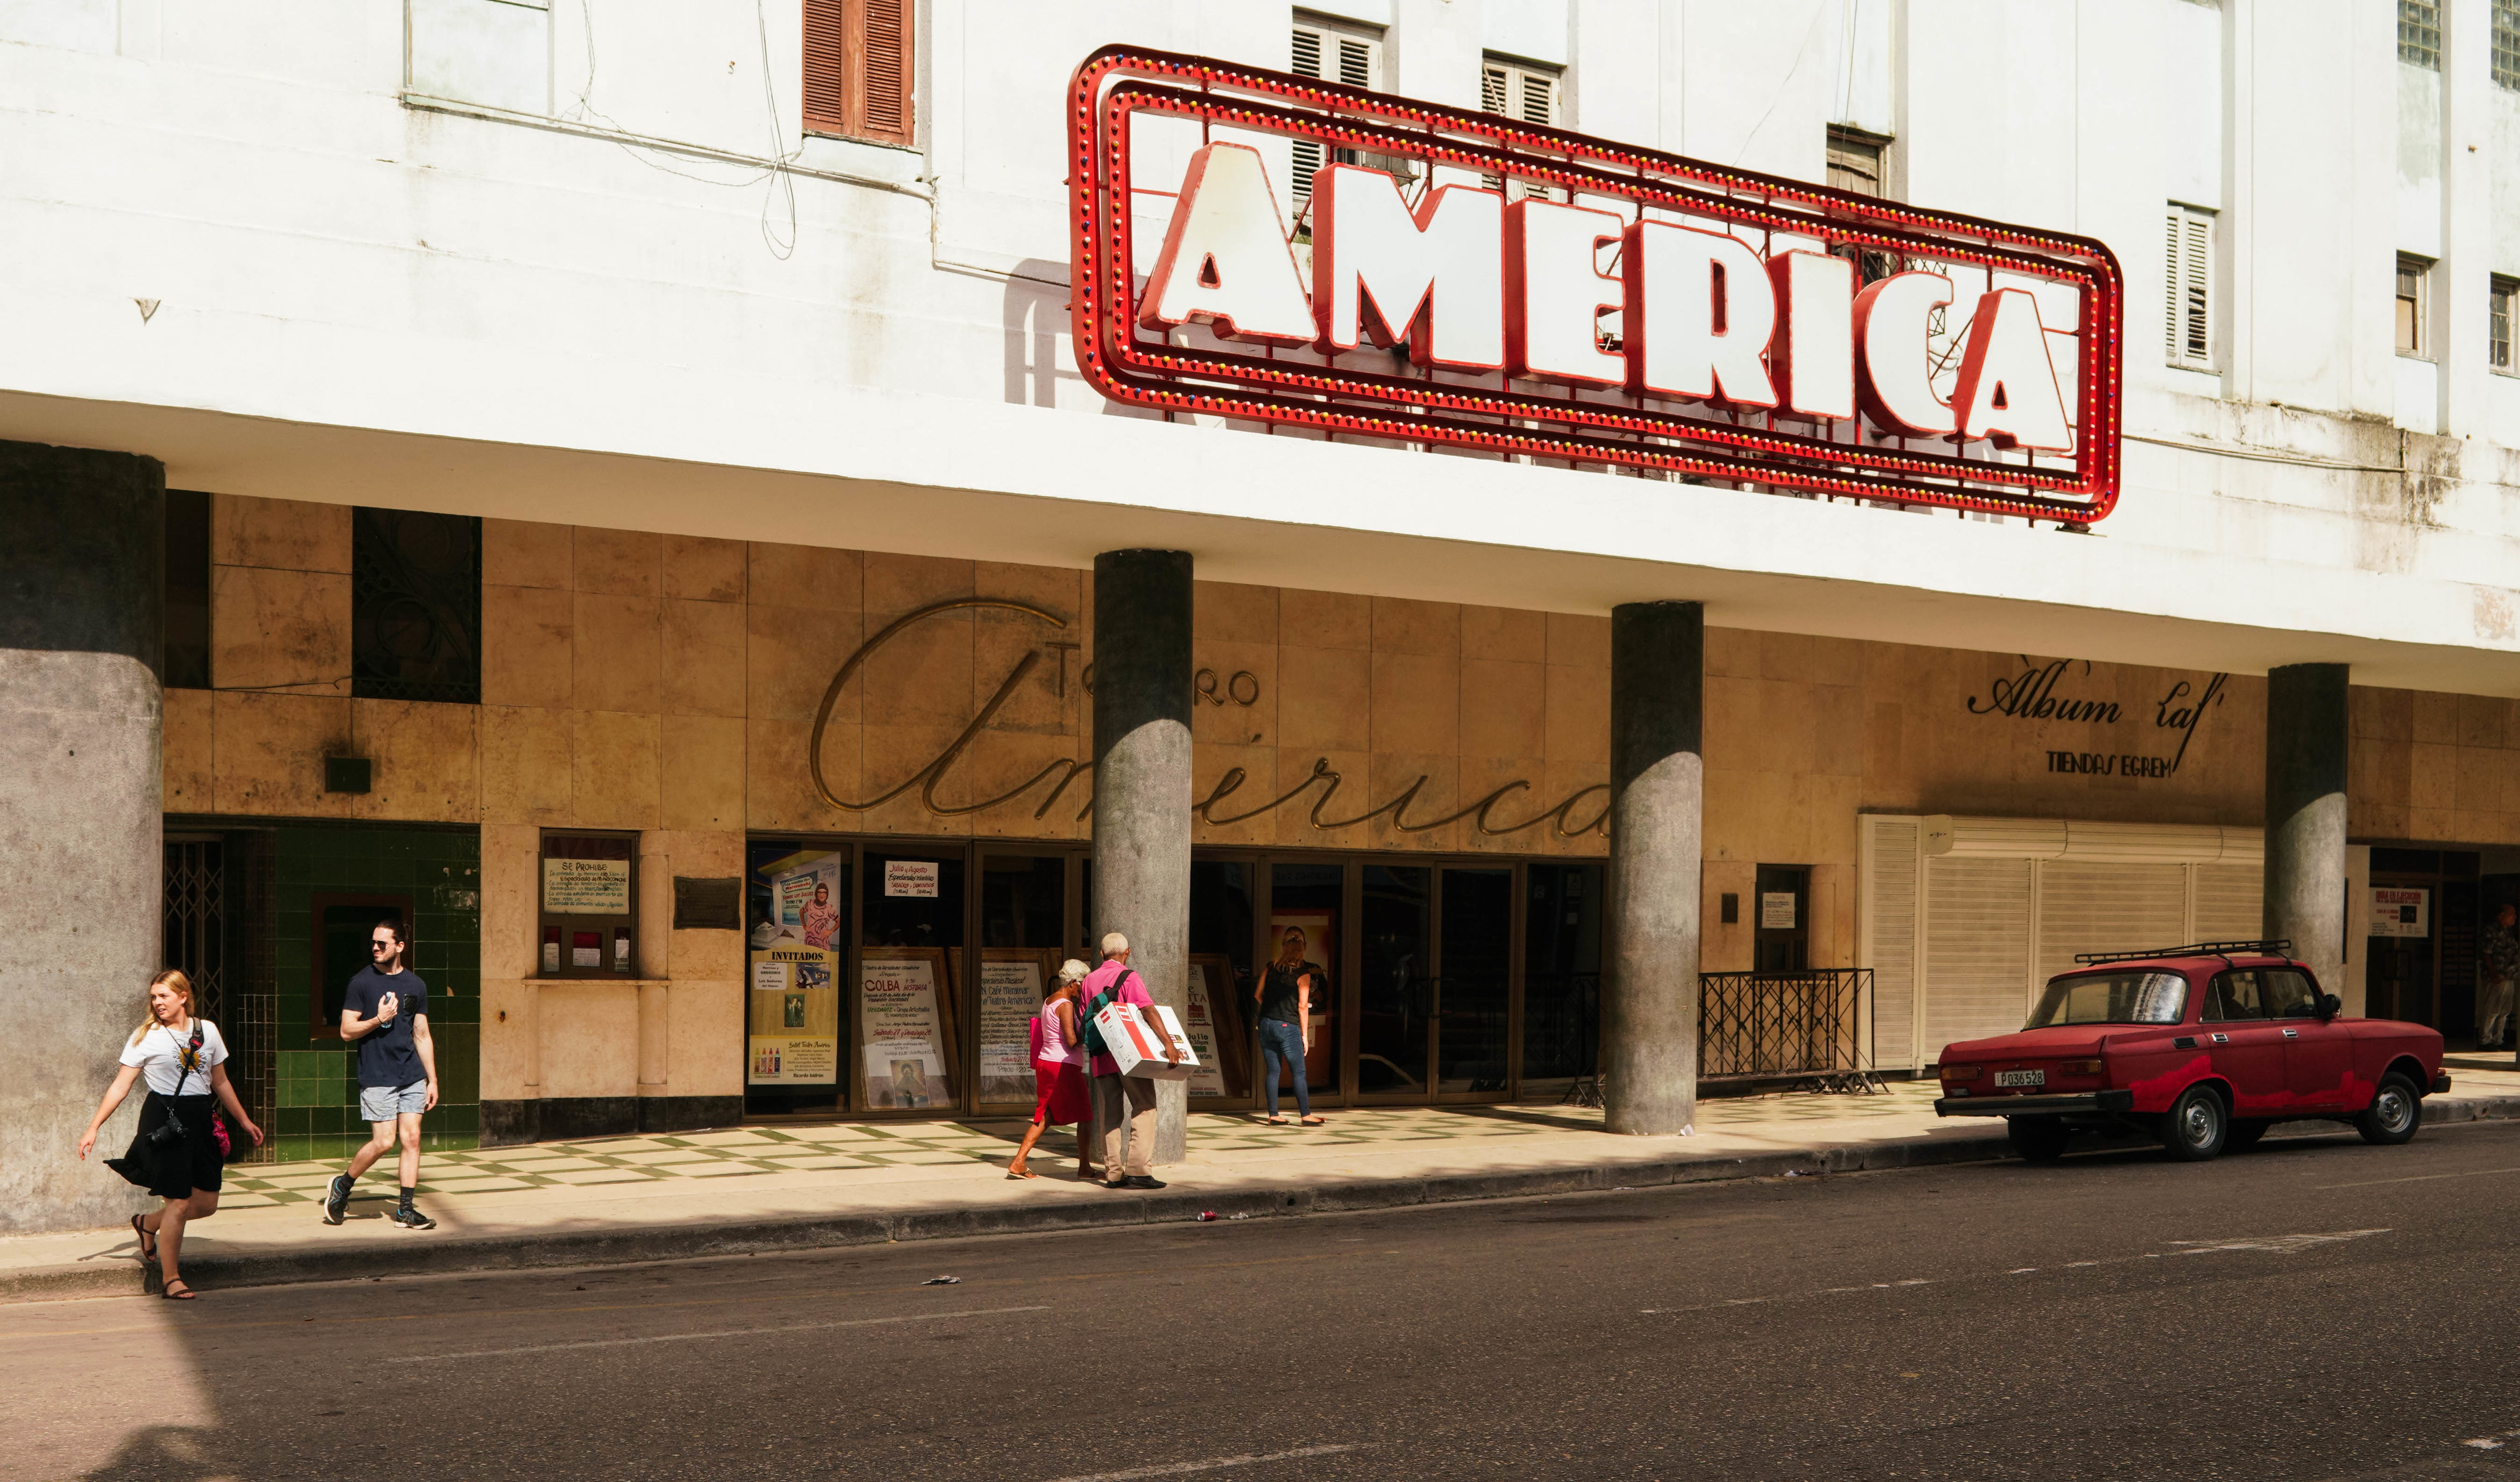 Little Havana: a generational divide?